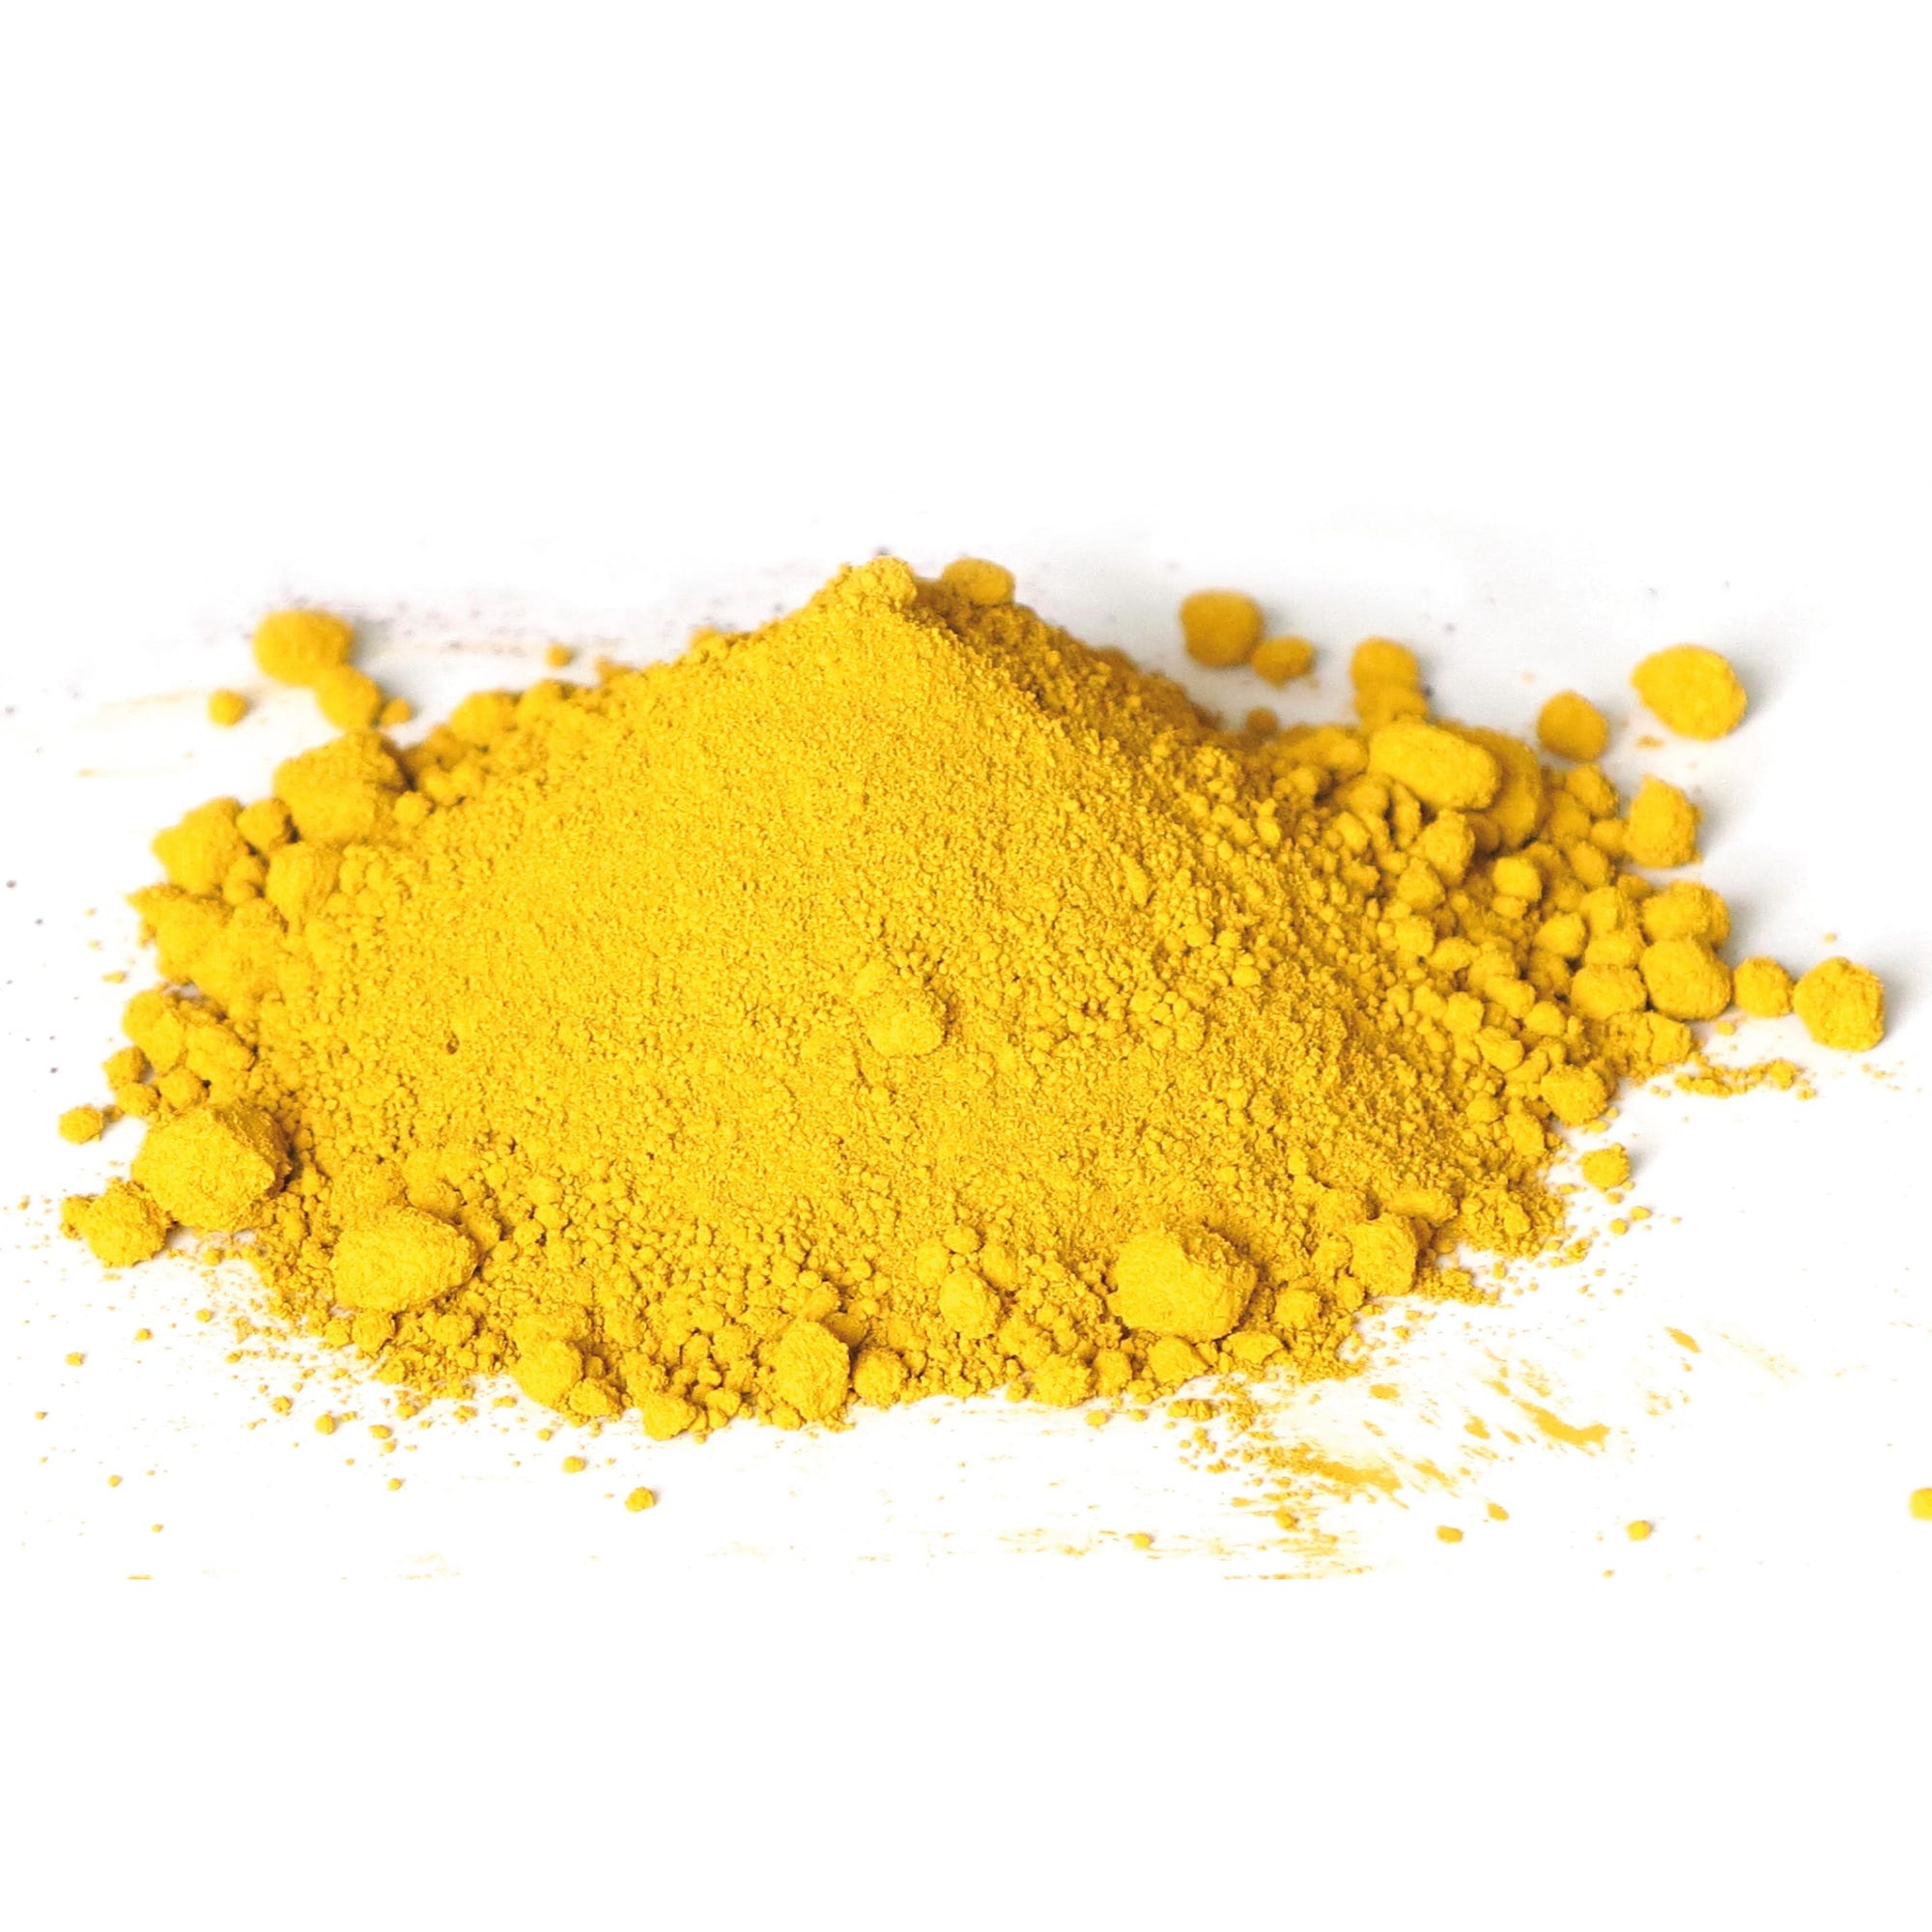 MONDELIN - Colorant jaune clair 500 g 1